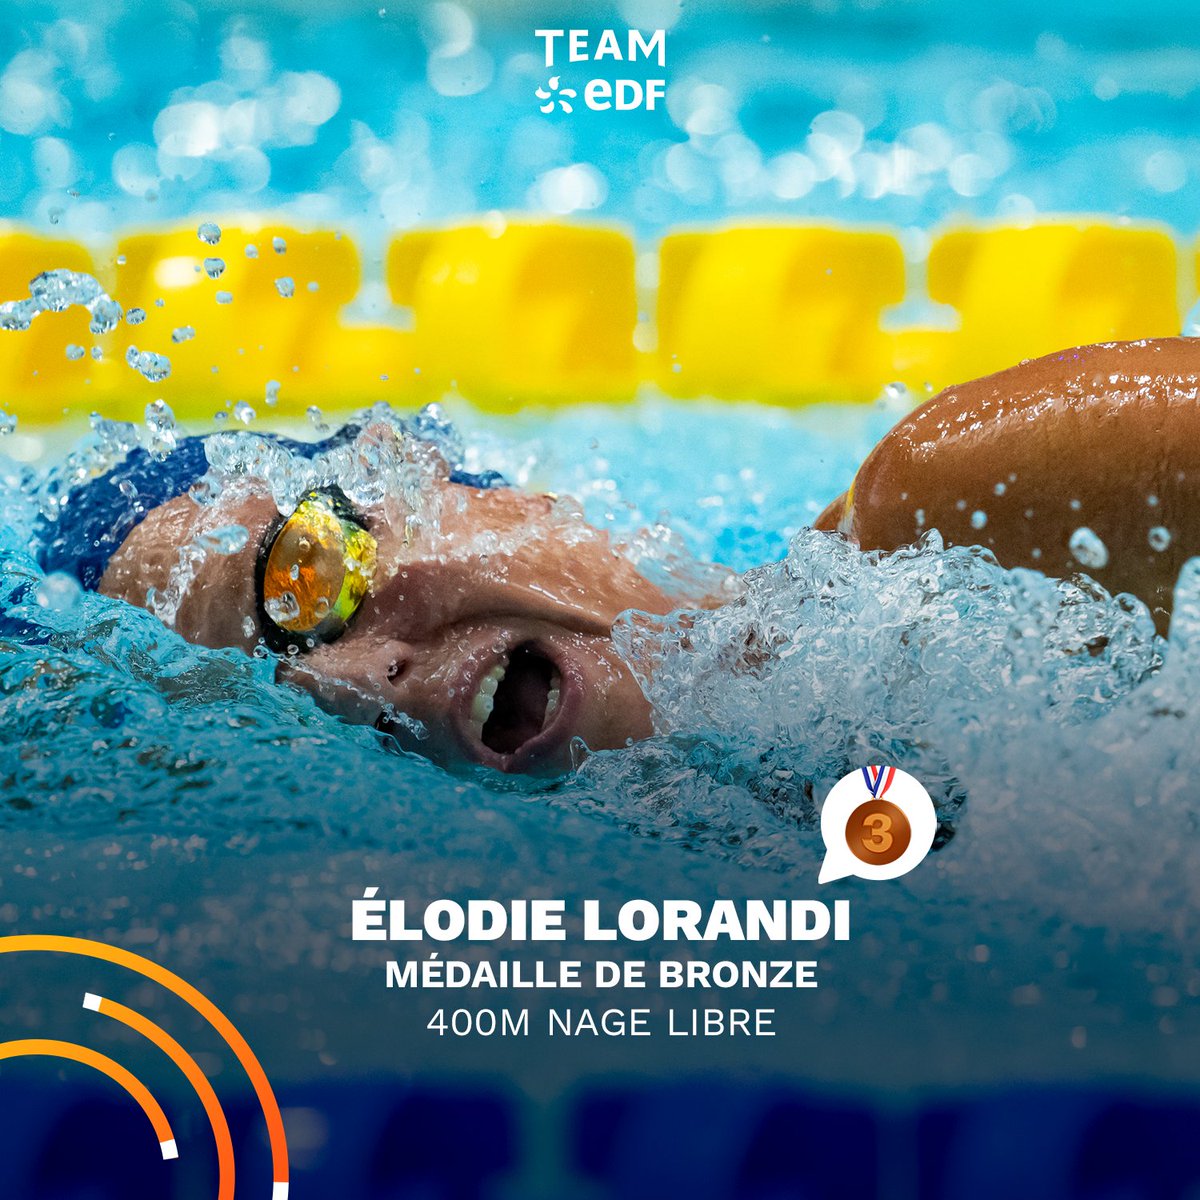 ⚡ MÉDAILLE DE BRONZE 🥉 Un 400m nage libre réussi pour notre para nageuse Elodie Lorandi qui décroche la médaille de bronze aux Championnats d'Europe ✨ #EnergieduSport #DLDOct